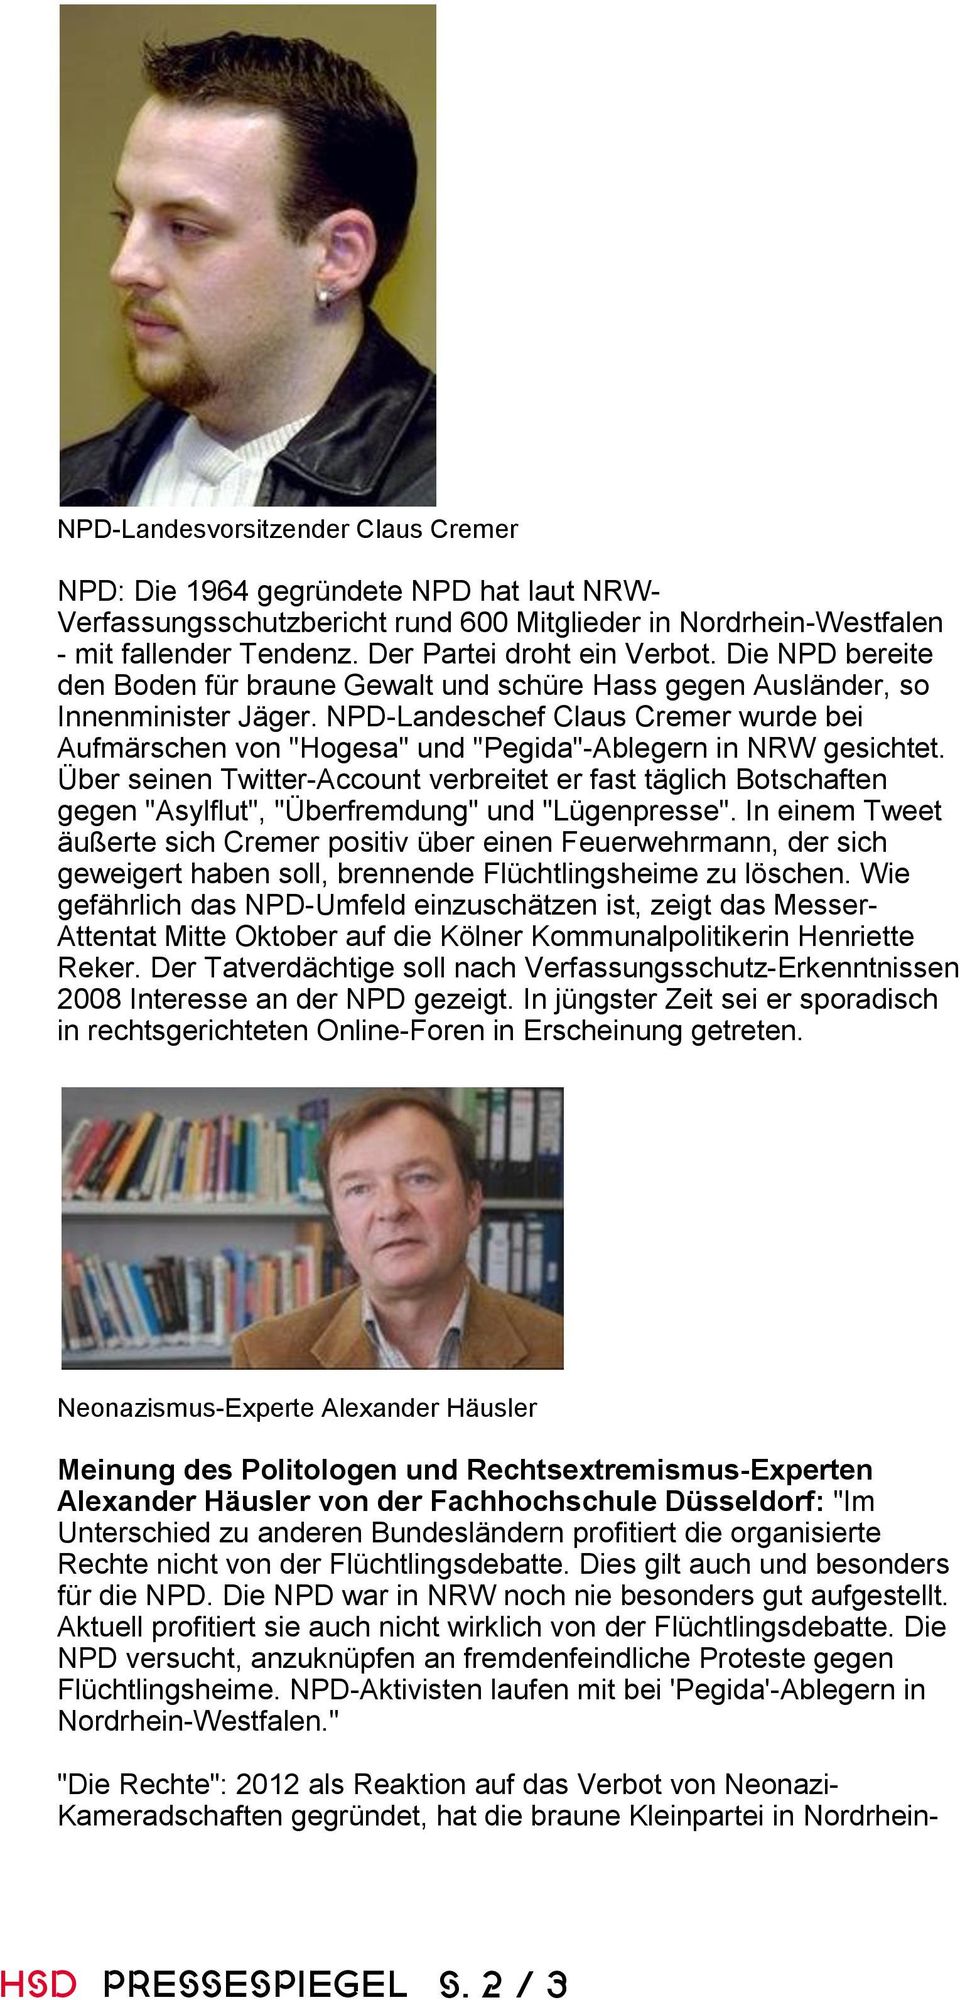 NPD-Landeschef Claus Cremer wurde bei Aufmärschen von "Hogesa" und "Pegida"-Ablegern in NRW gesichtet.